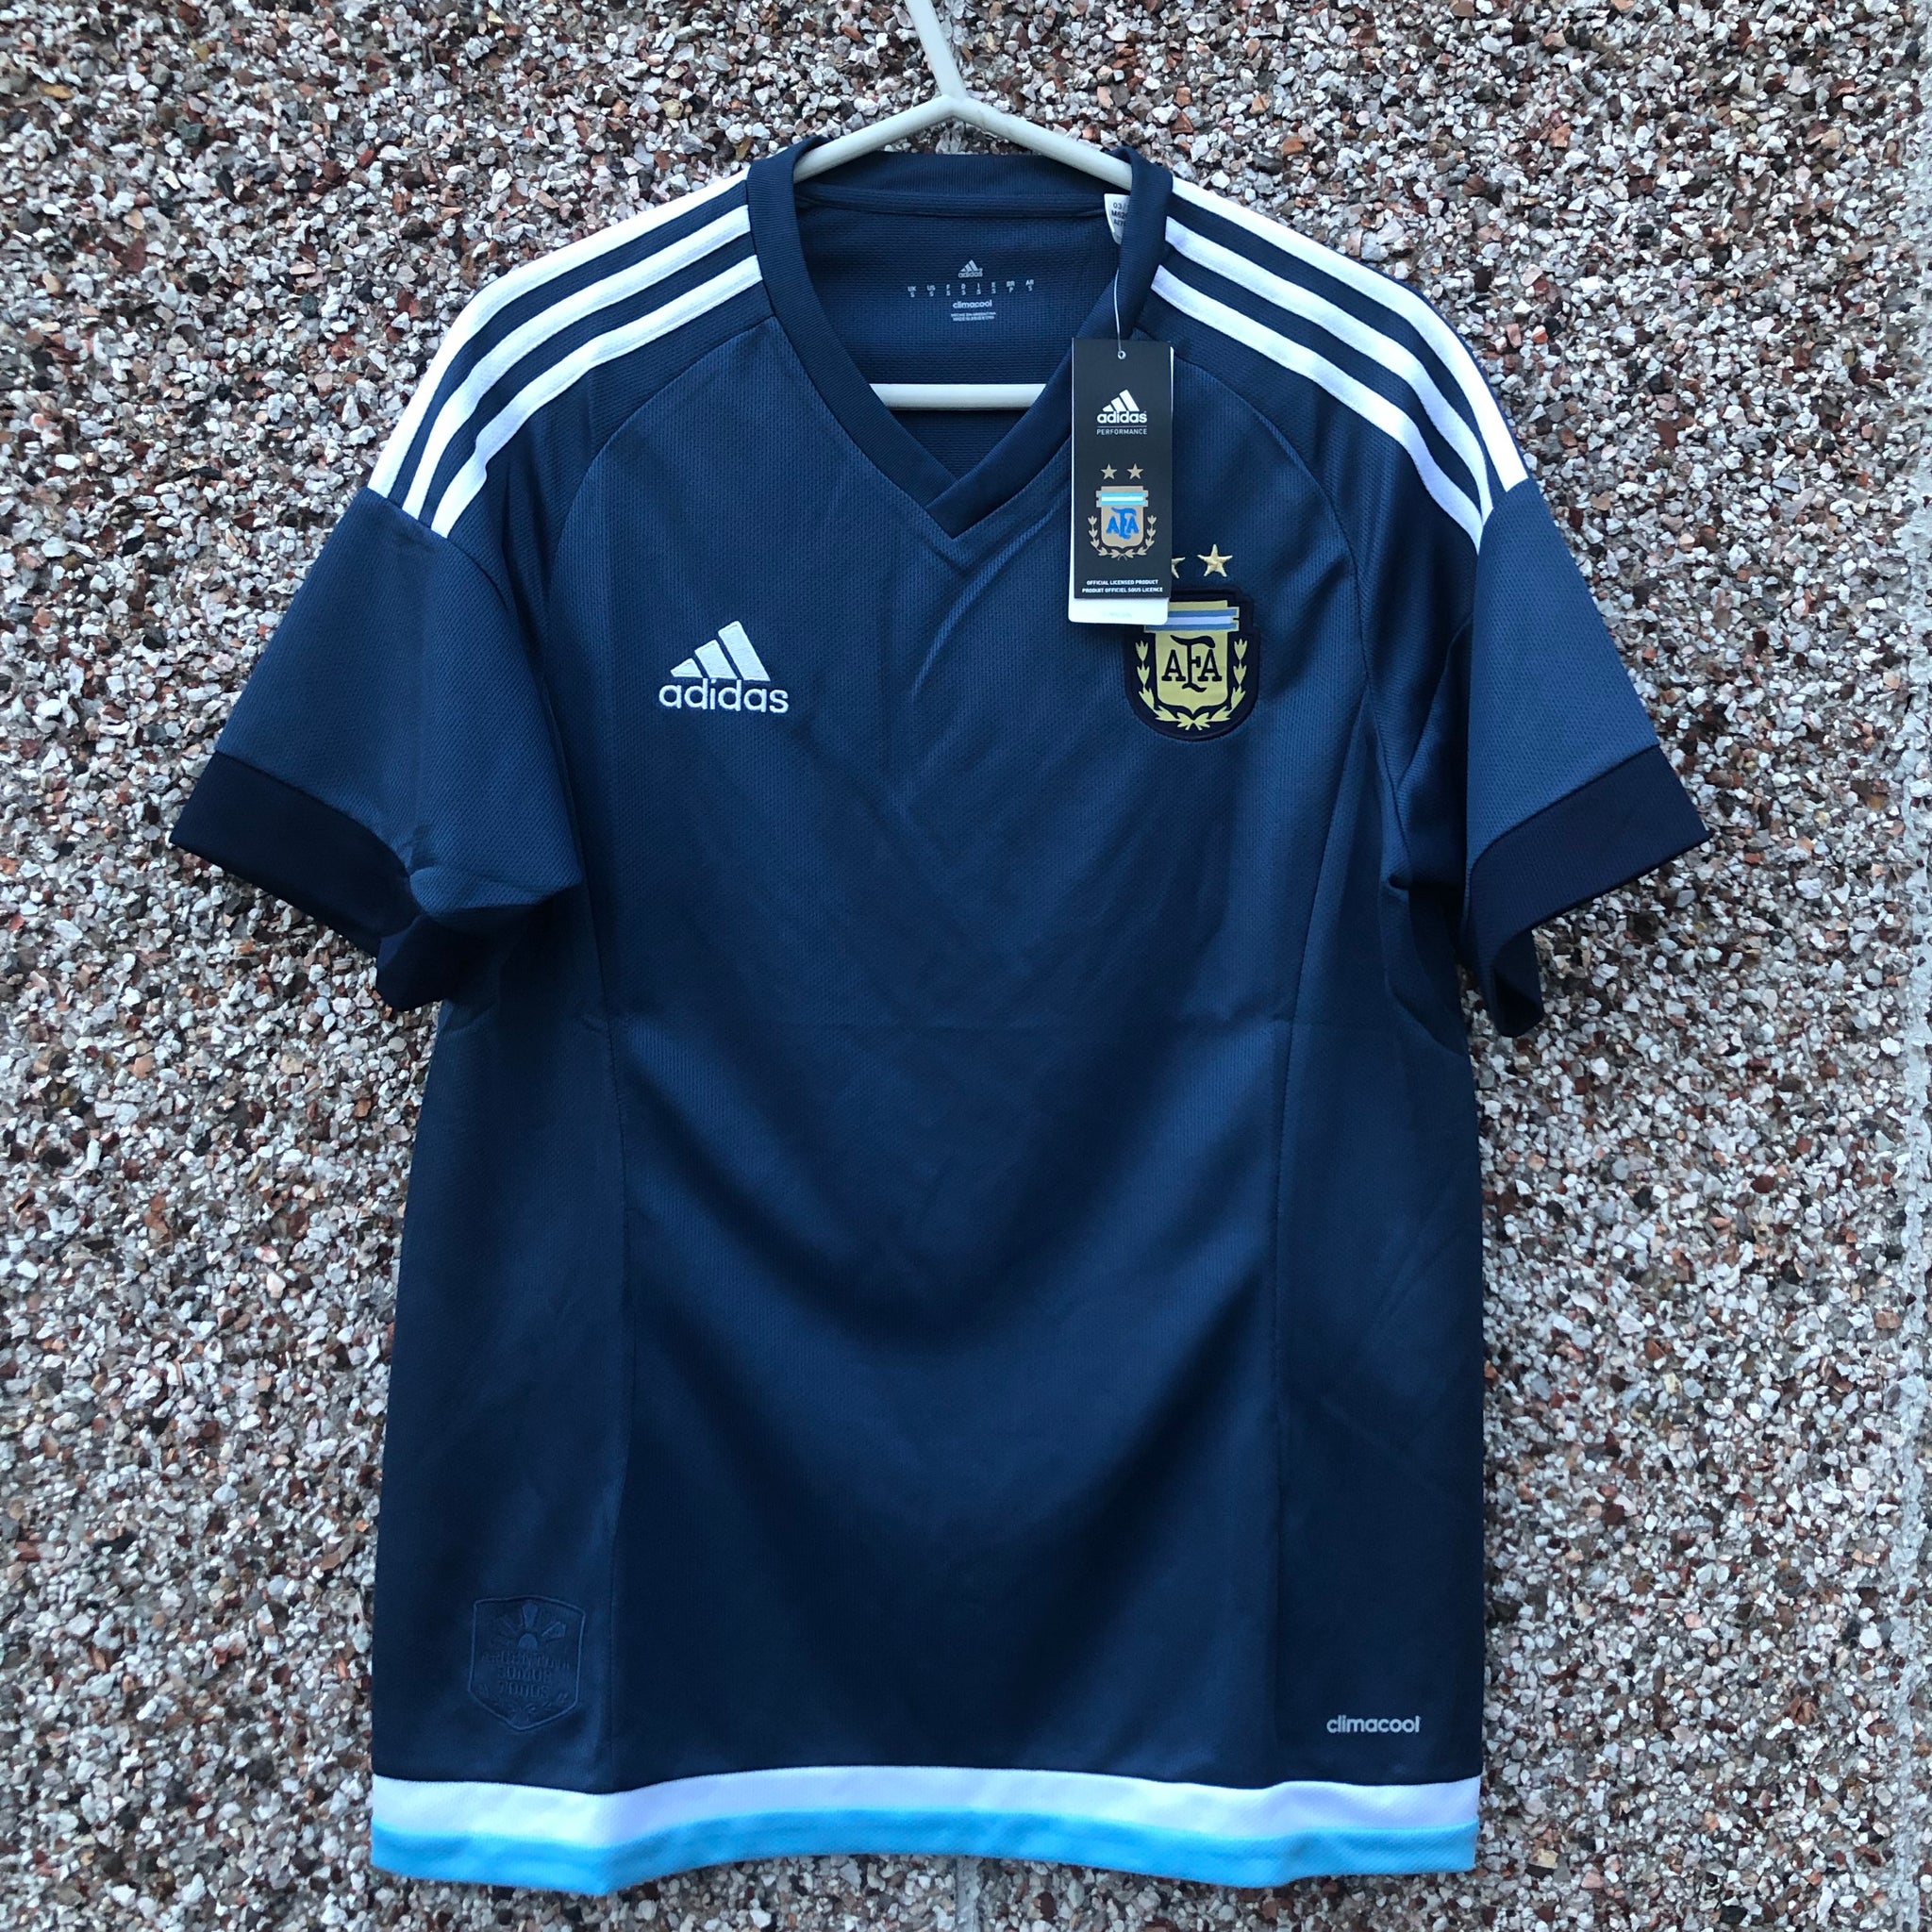 argentina away jersey 2016